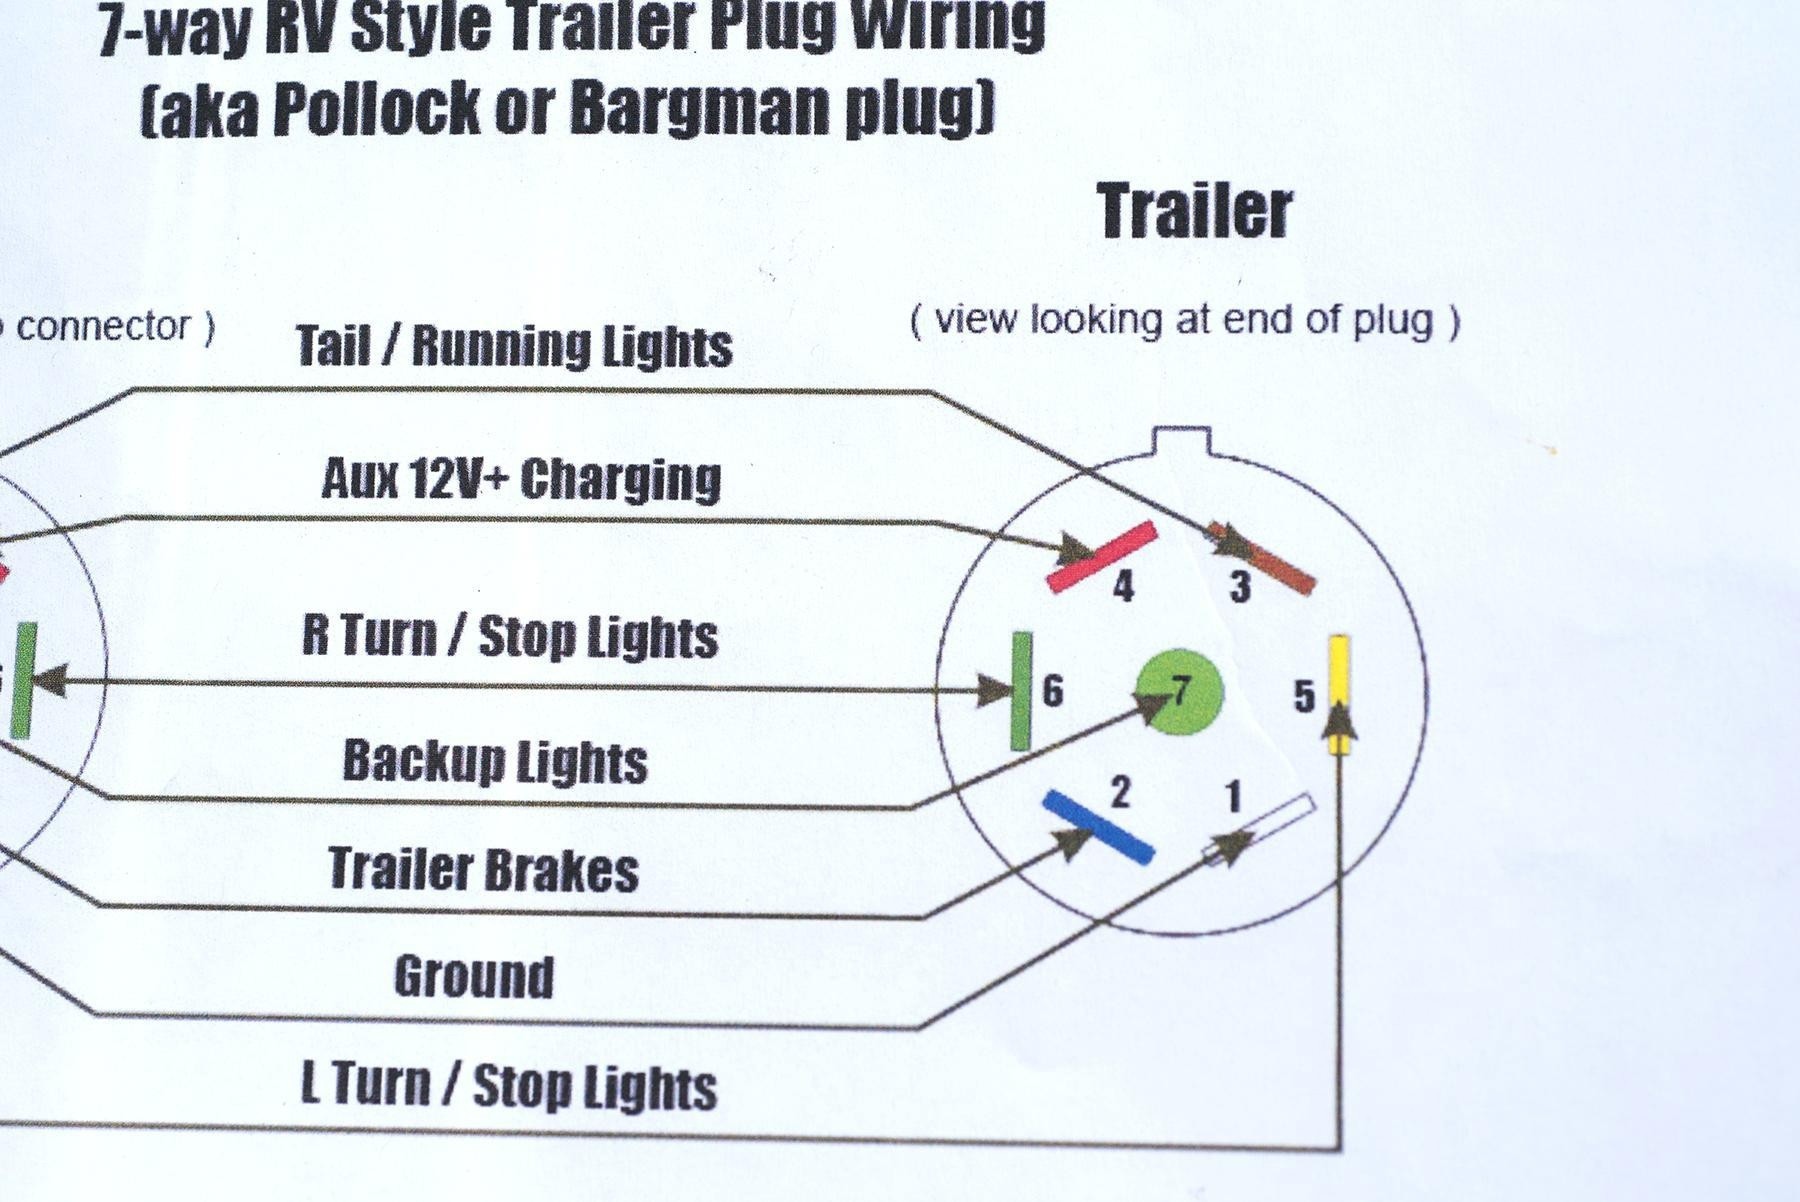 Trailer Brake Wiring Diagram 7 Way How to Wire 7 Way Trailer Plug Diagram Shahsramblings Of Trailer Brake Wiring Diagram 7 Way